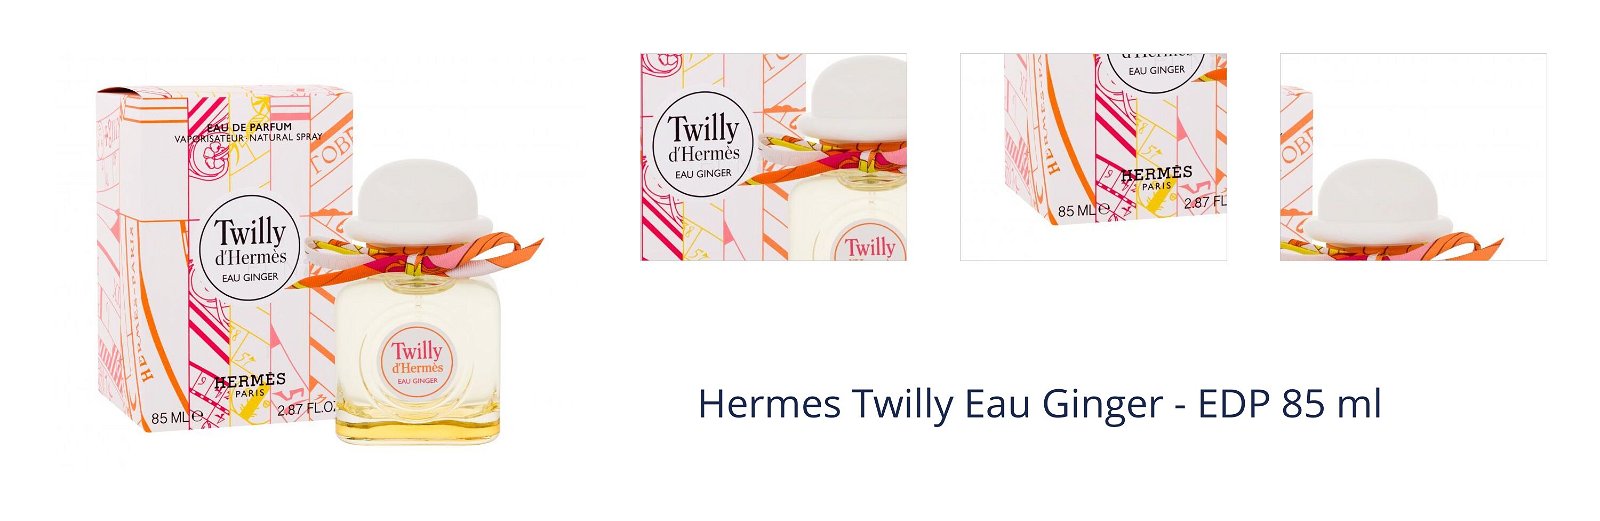 Hermes Twilly Eau Ginger - EDP 85 ml 1